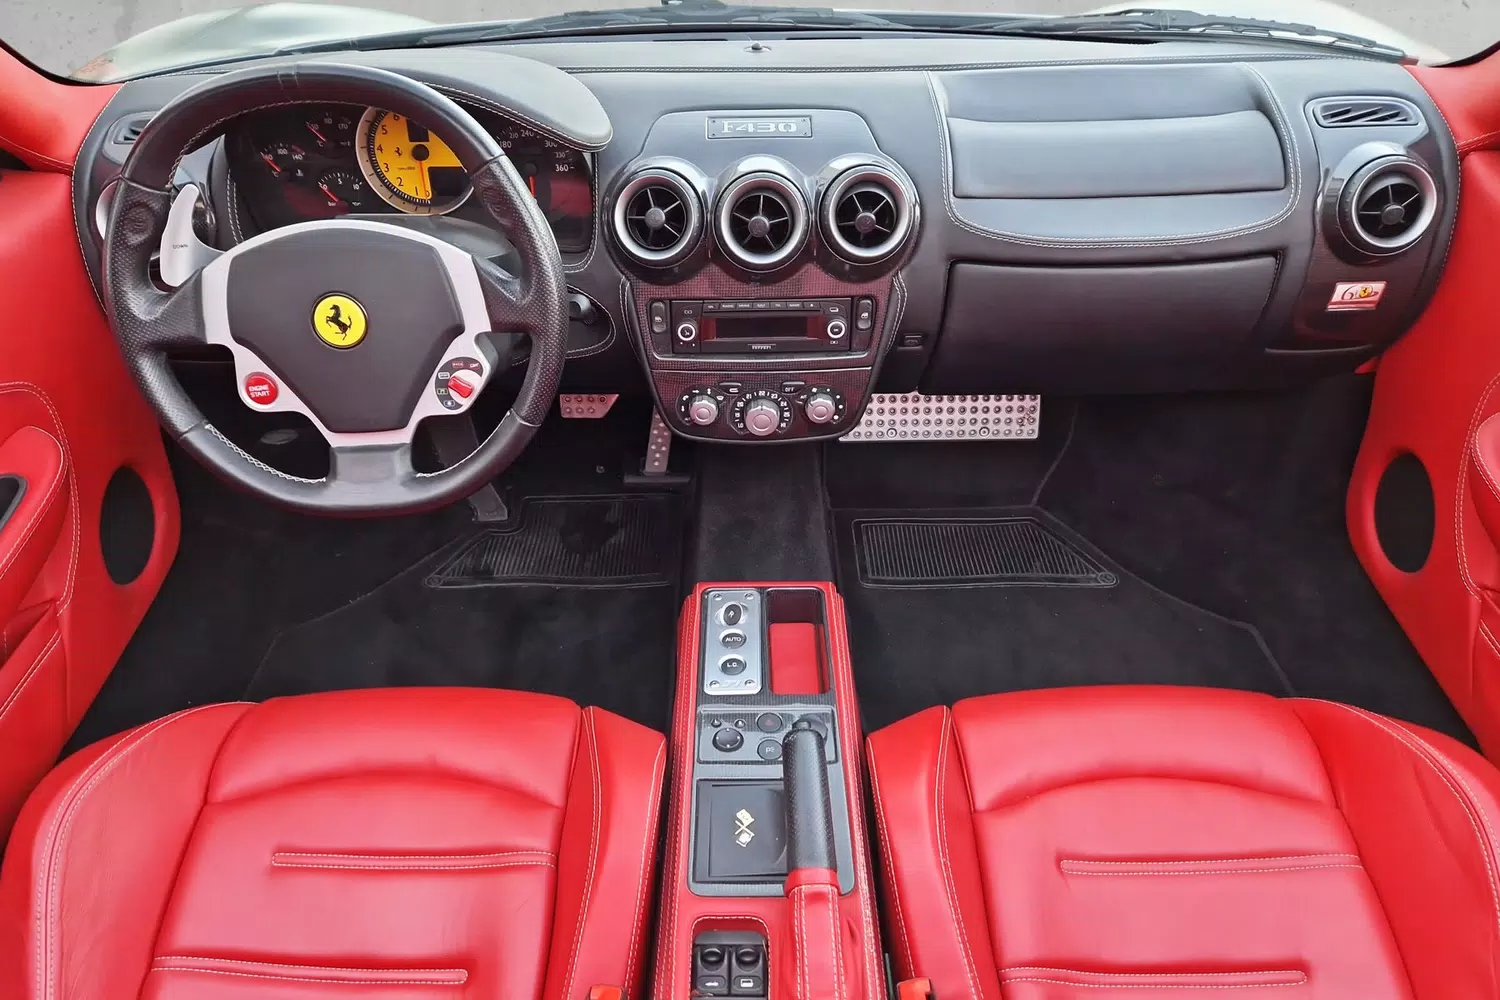 Ferrari F430 interior - Cockpit